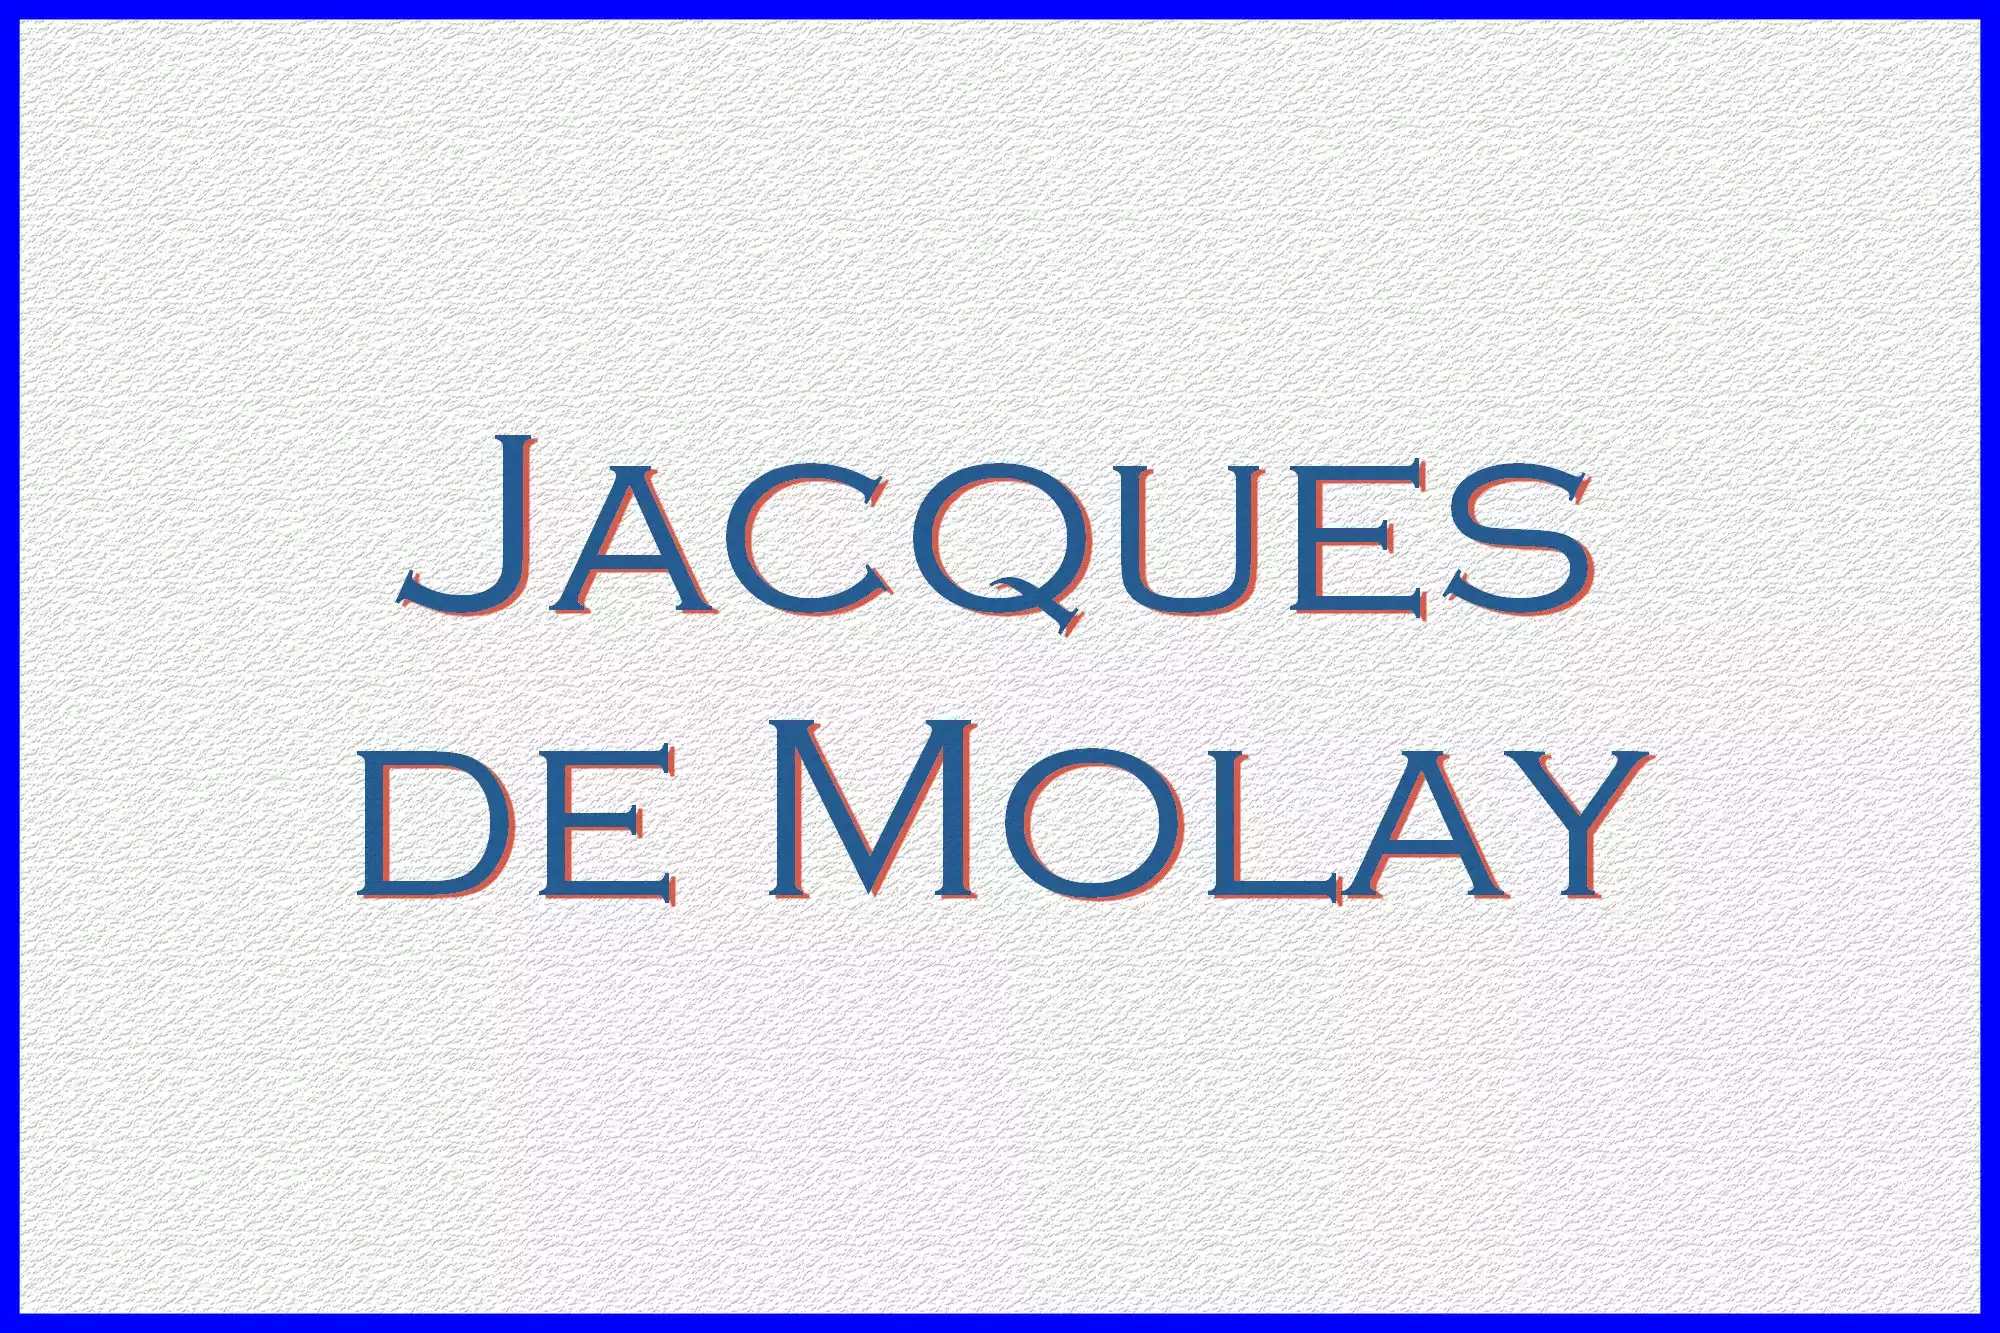 Jacques de Molay, fut le dernier grand maitre de l'Ordre du Temple, piètre stratège et totalement dépassé par les événements, il assista impuissant à la mort de l'Ordre du Temple et à l'extermination des Templiers